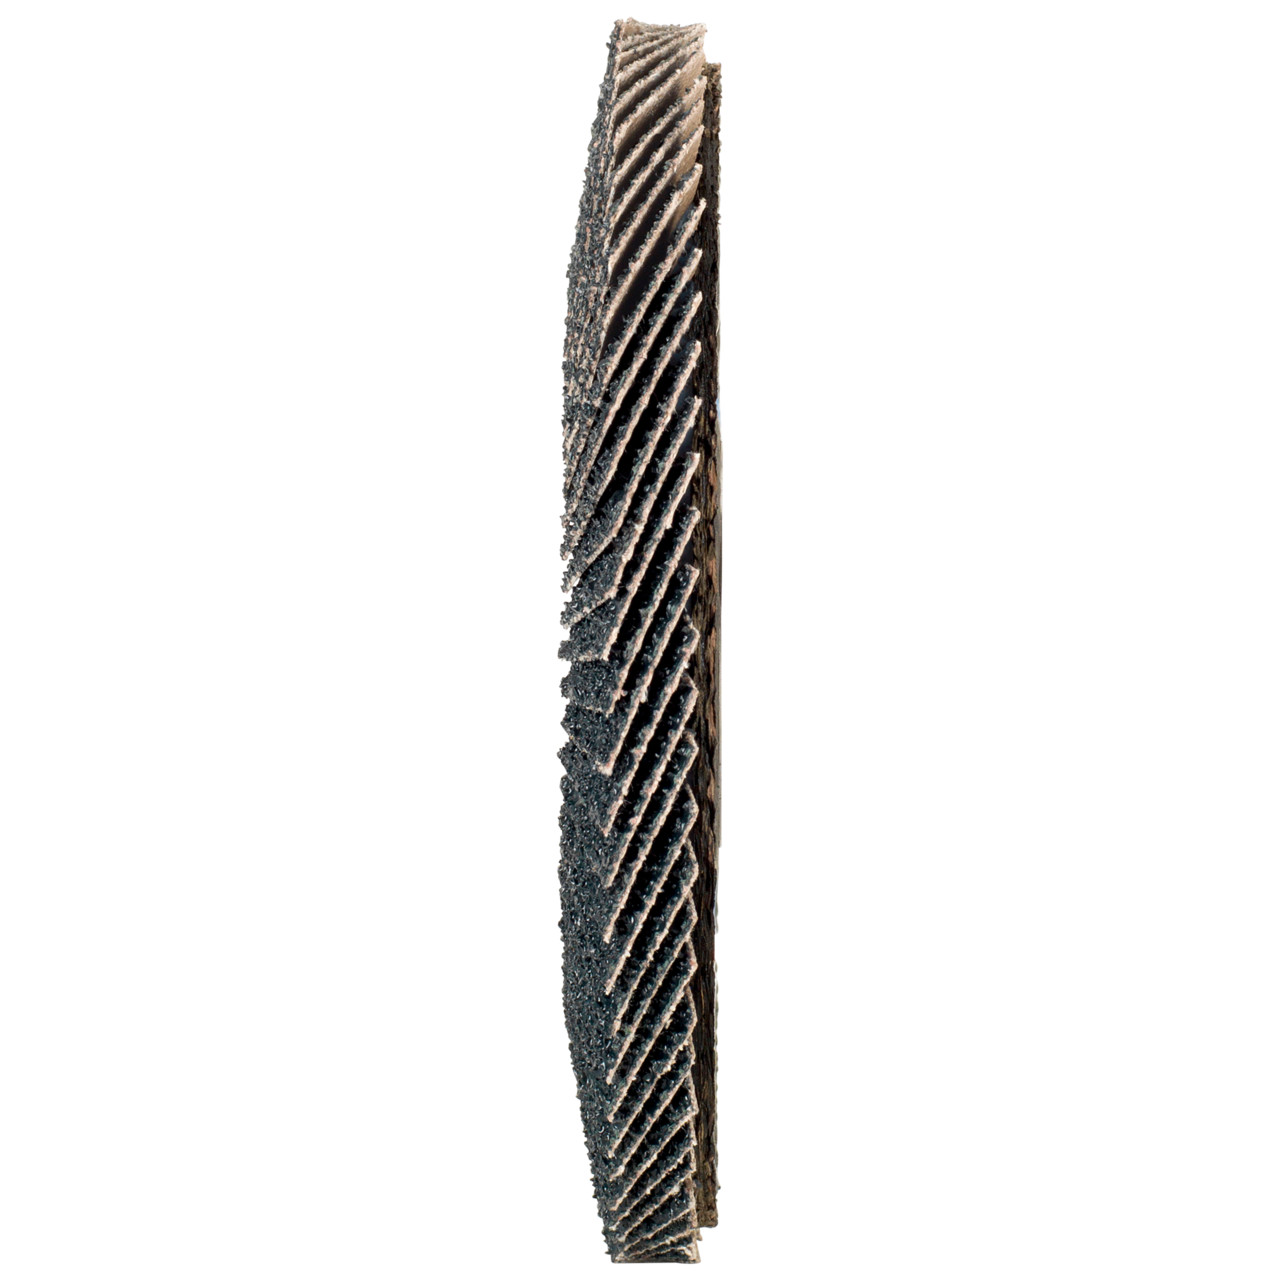 Rondella dentata Tyrolit DxH 125x22.2 2in1 per acciaio e acciaio inox, P60, forma: 27A - versione offset (versione con corpo portante in fibra di vetro), Art. 668664